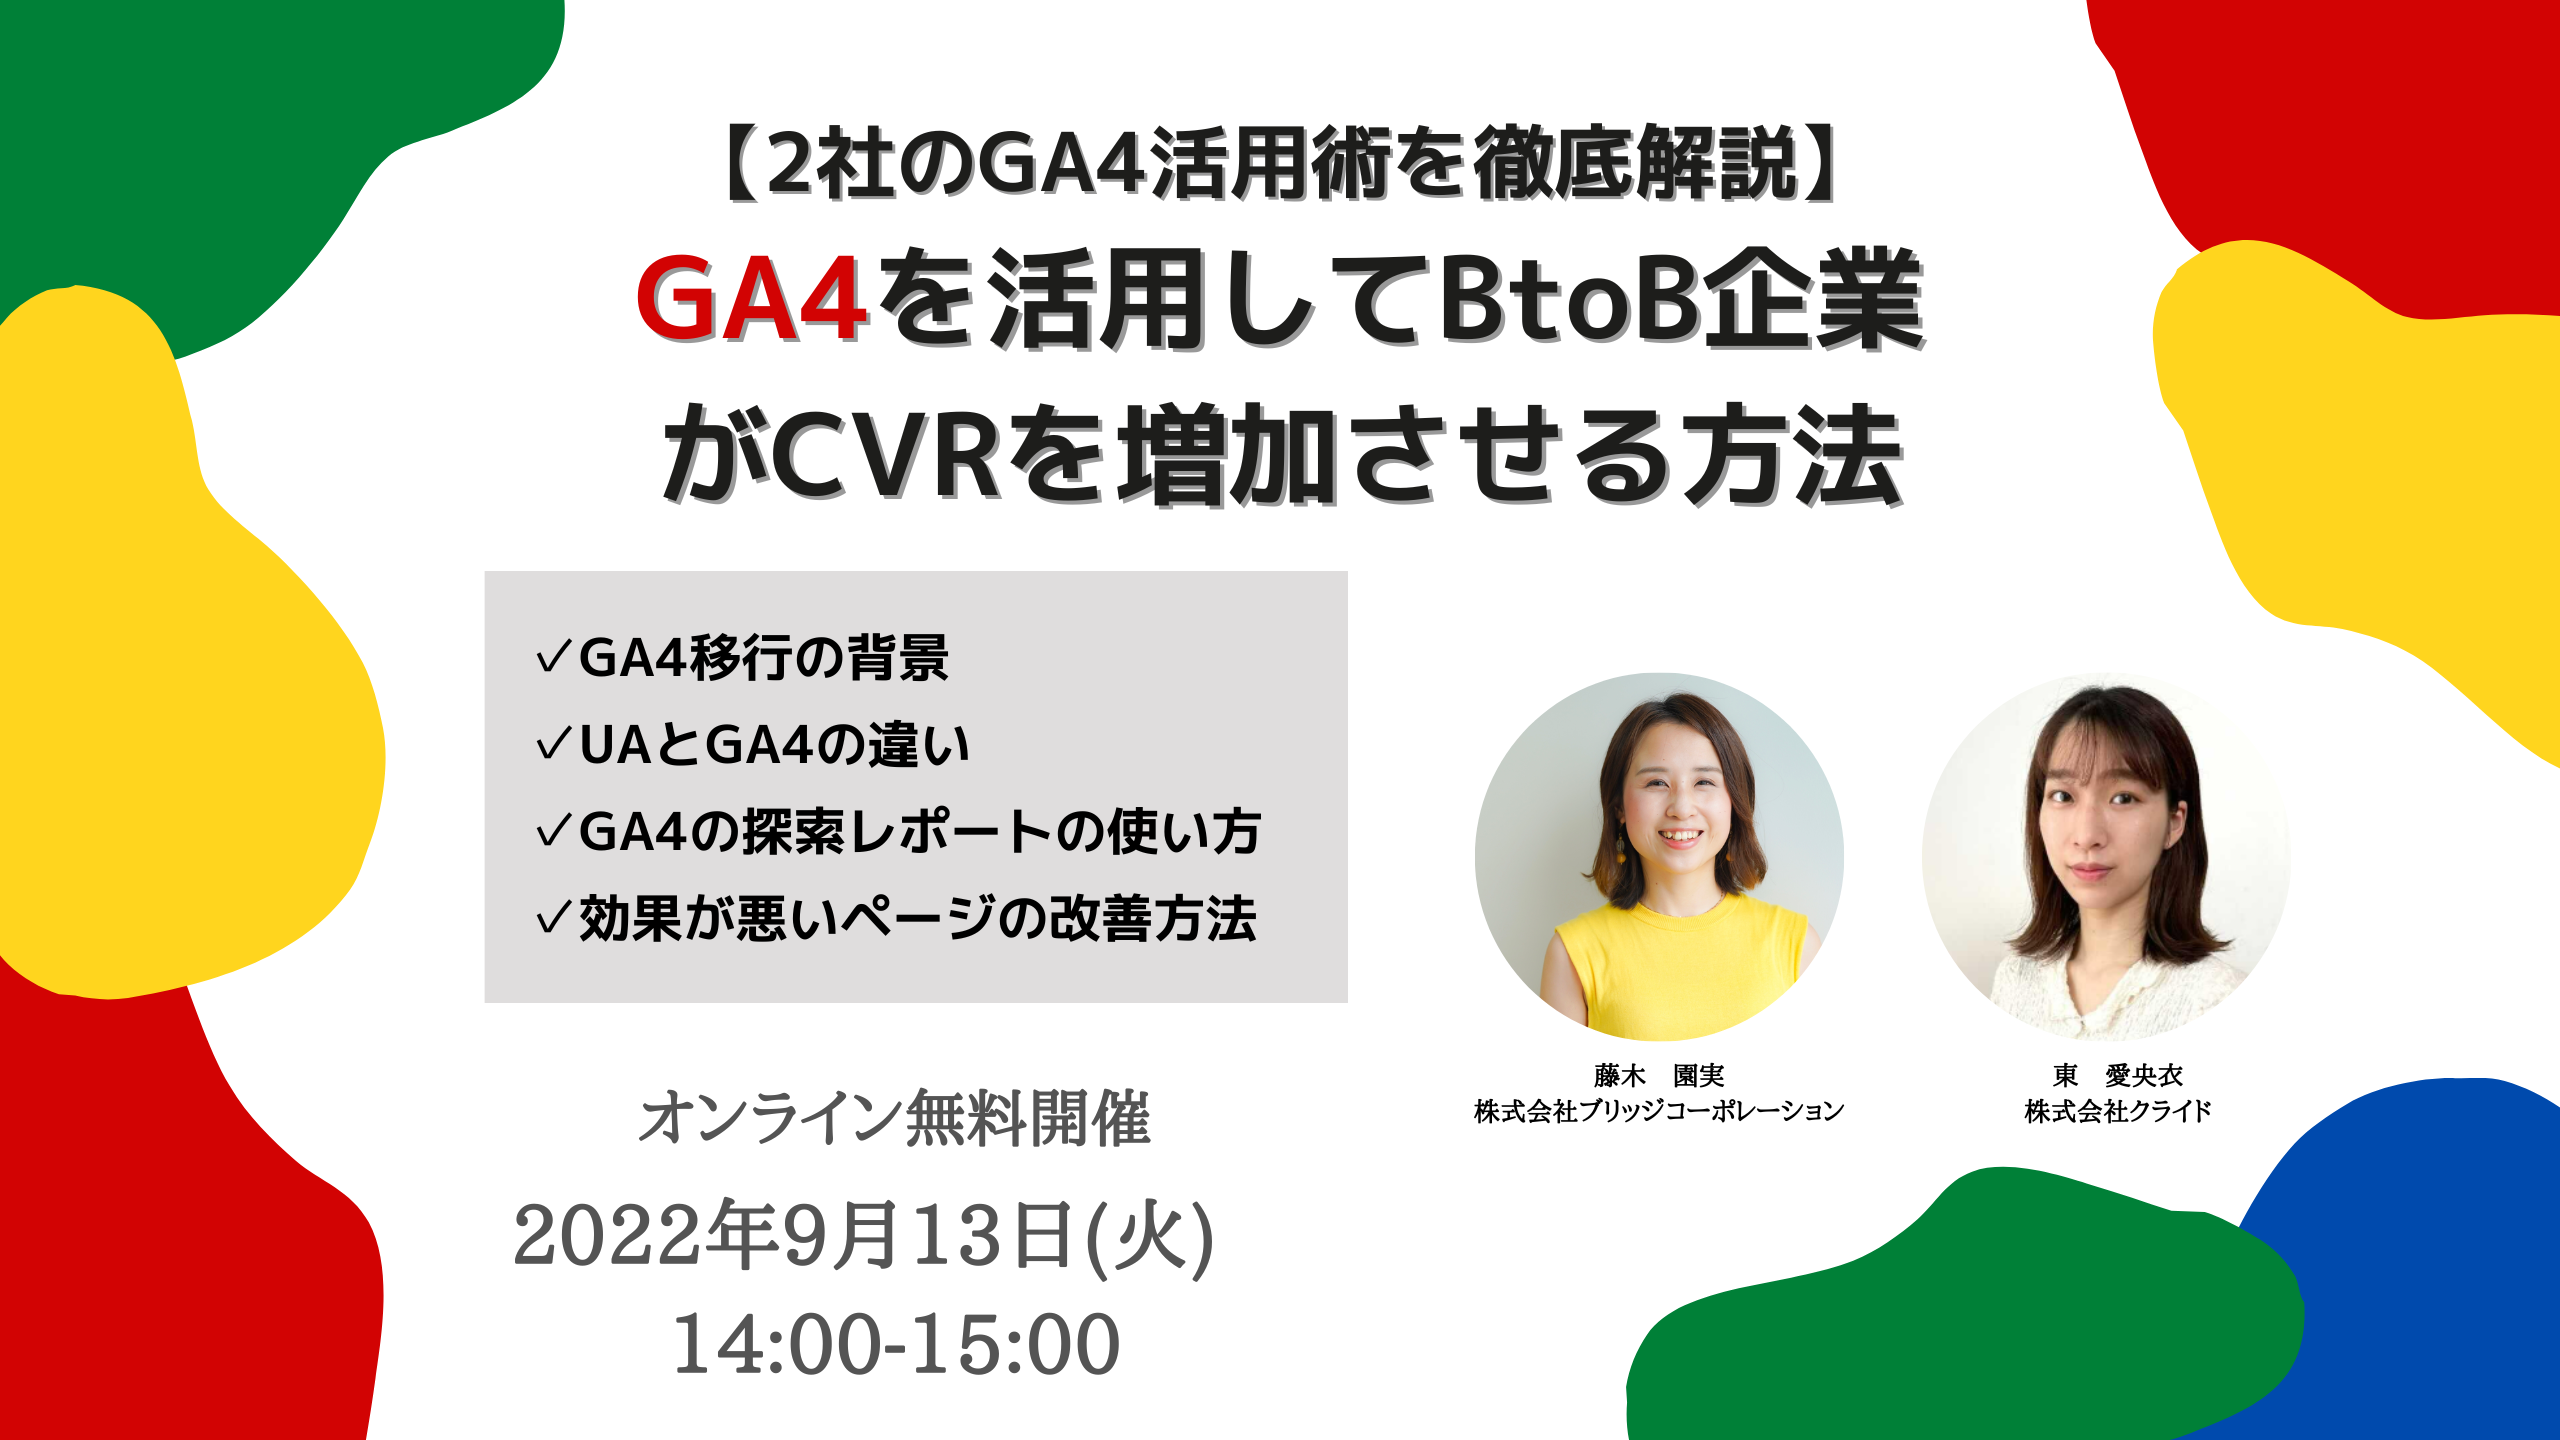 9月13日(火)オンライン開催『GA4を活用してBtoB企業がCVRを増加させる方法』セミナーのお知らせ